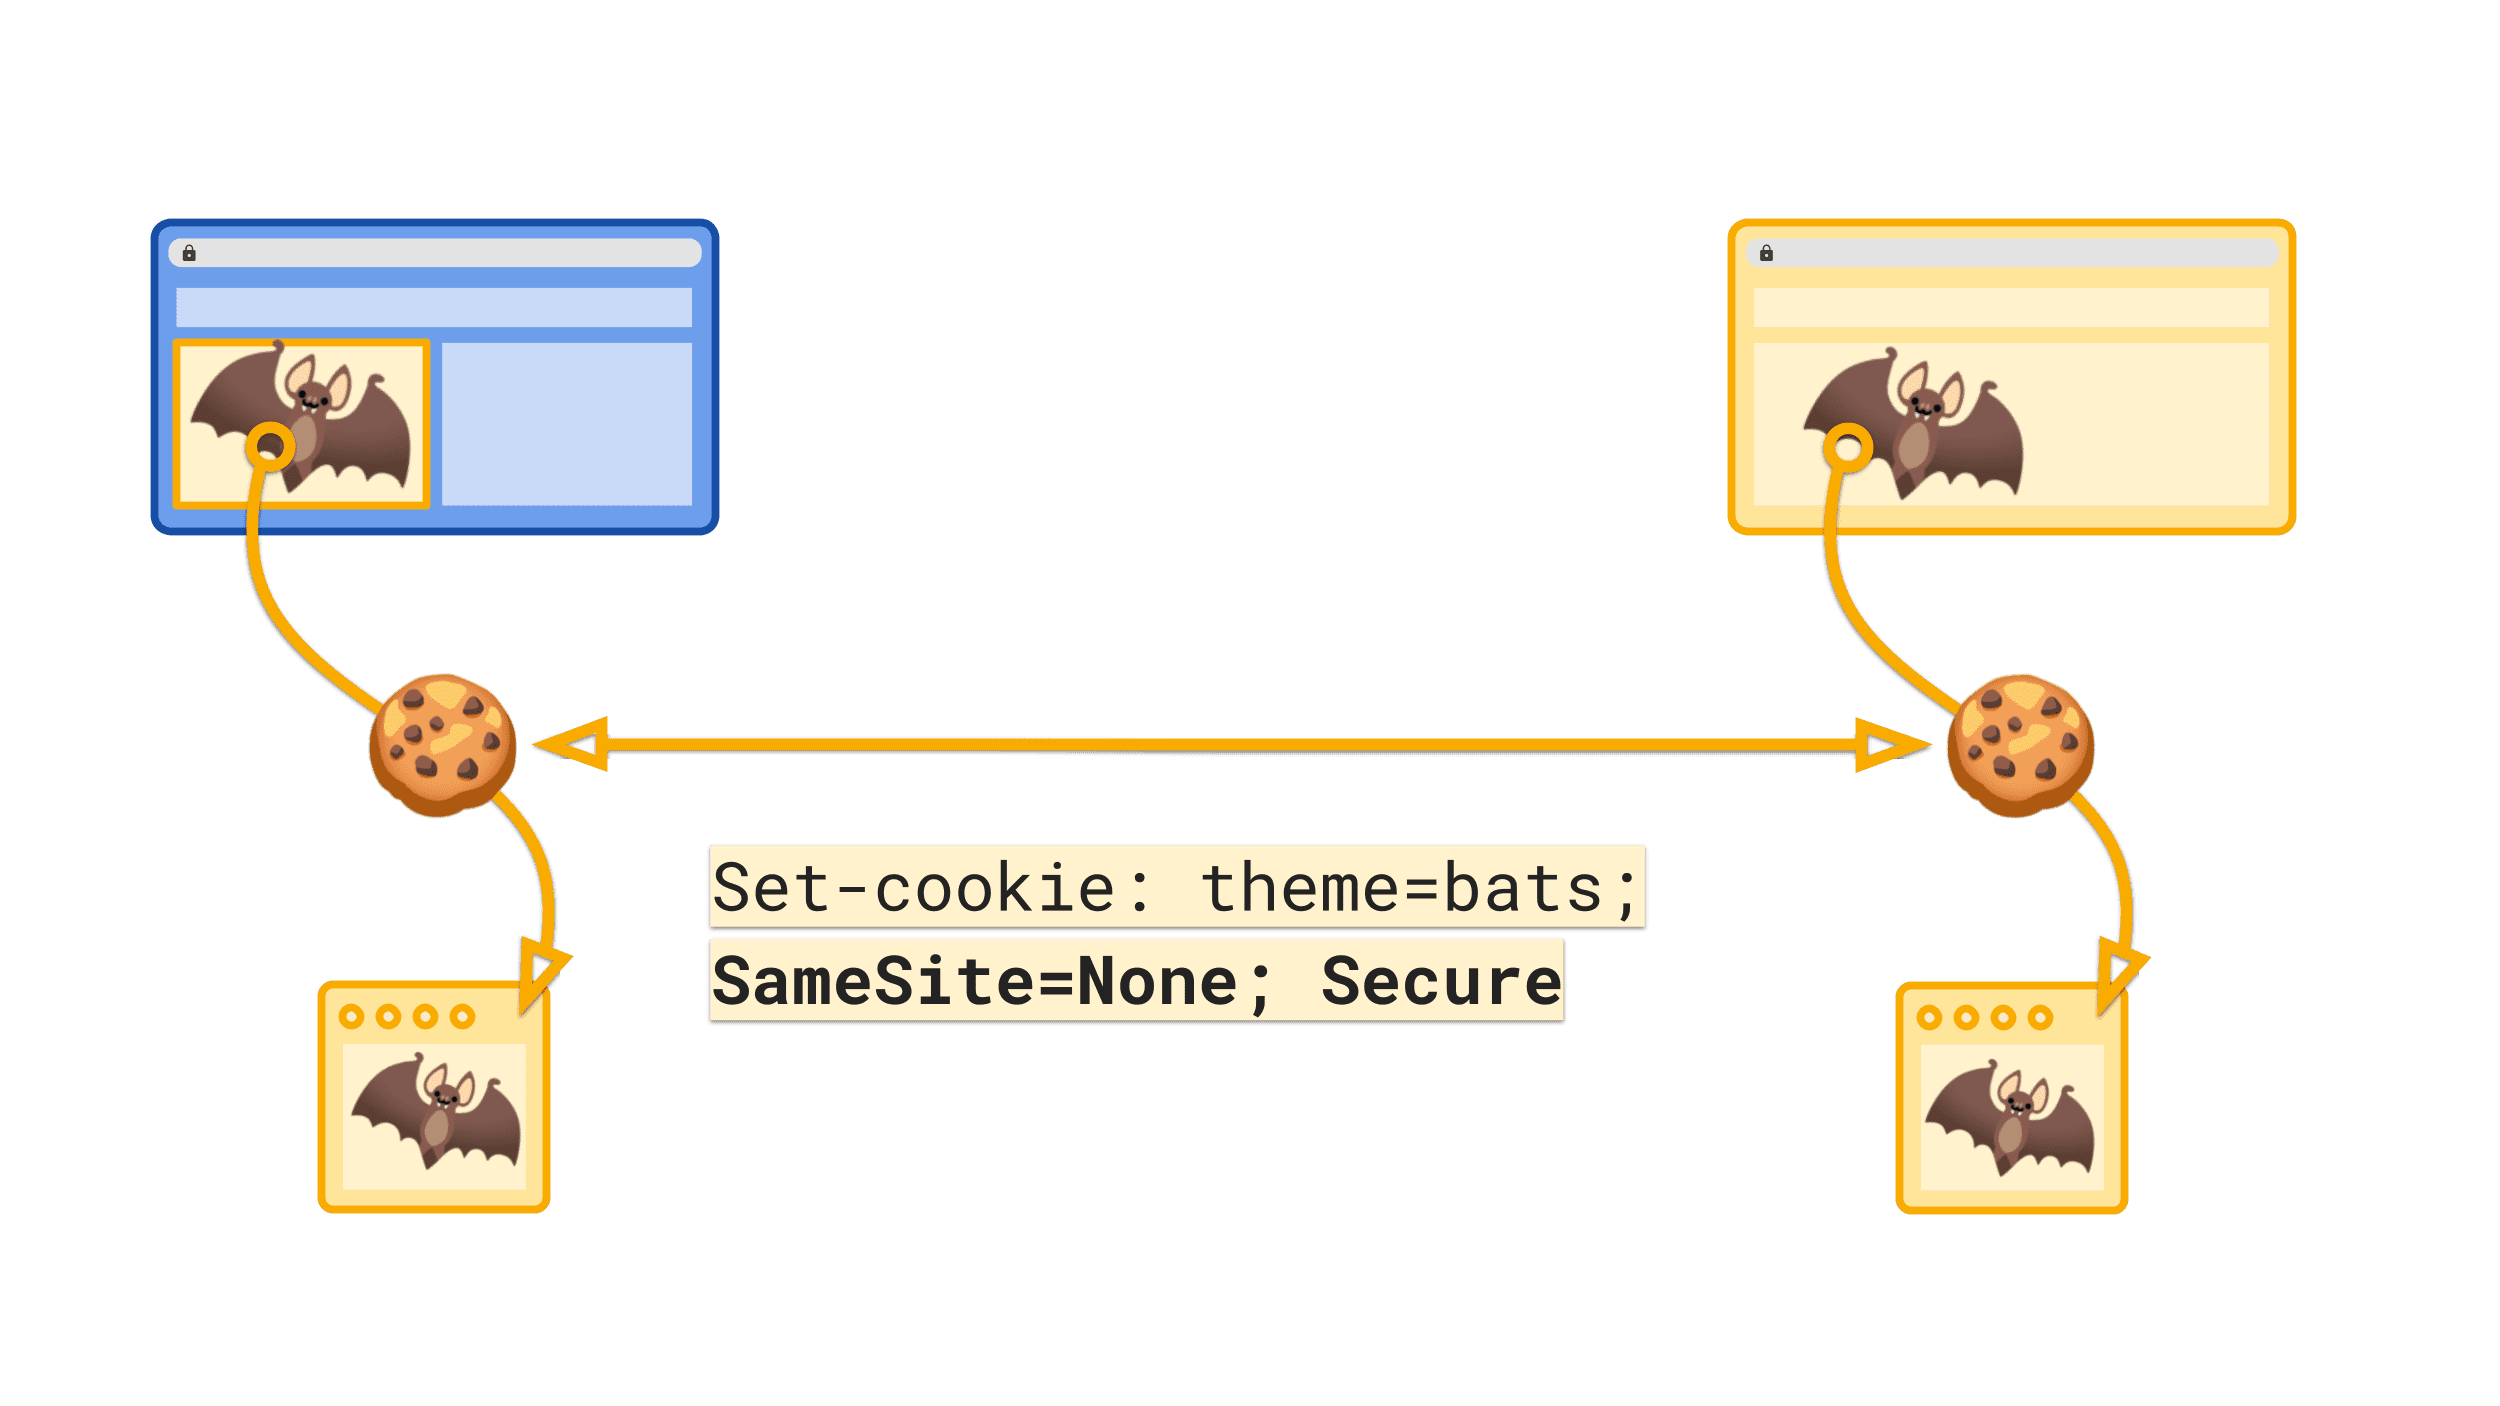 明確的 SameSite=None 值會標示要在跨網站結構定義中傳送的 Cookie